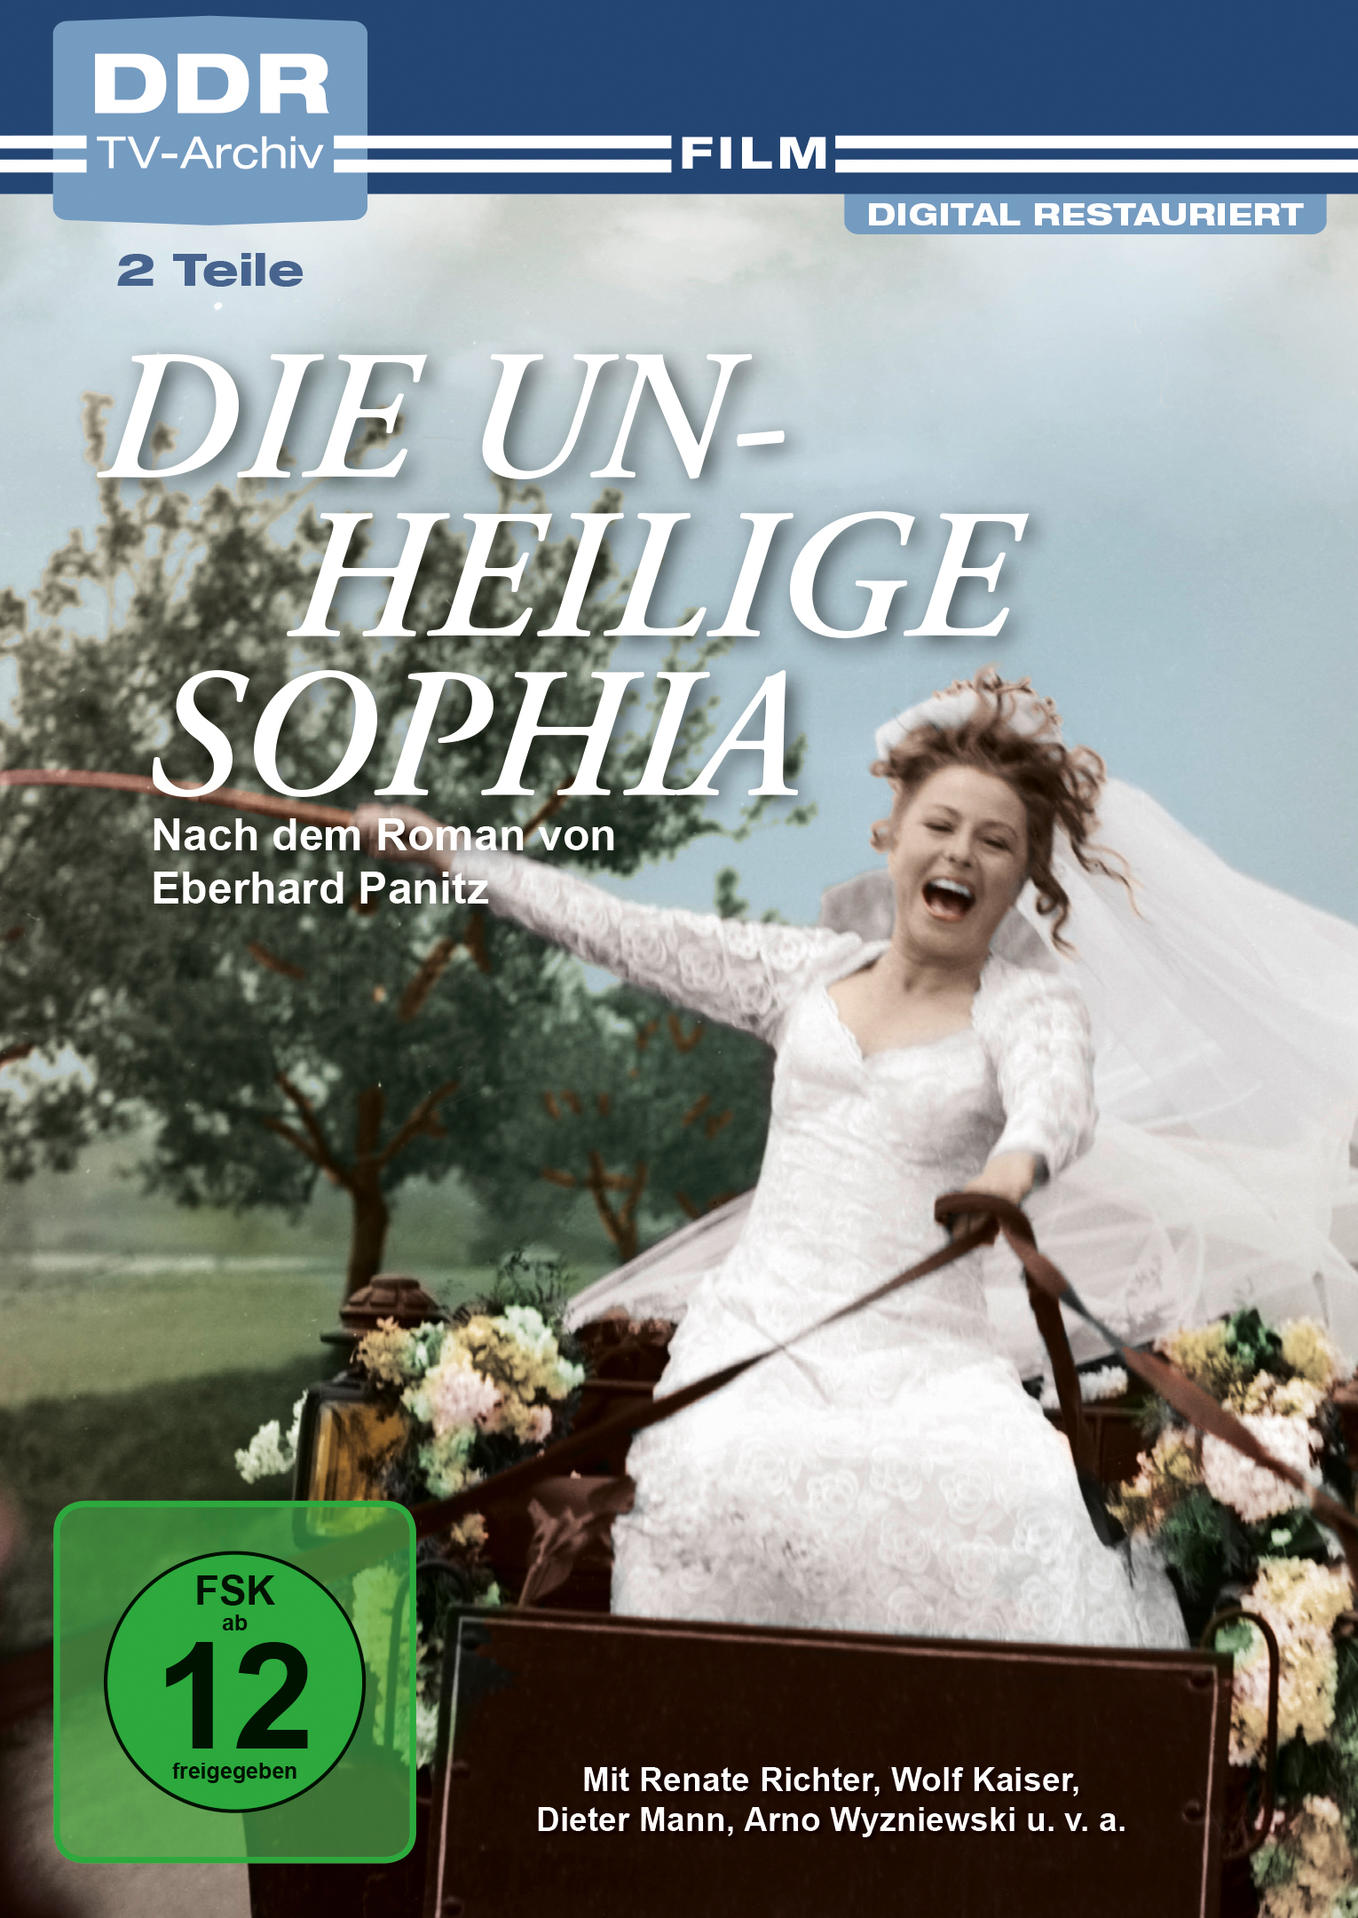 DVD Sophia unheilige Die